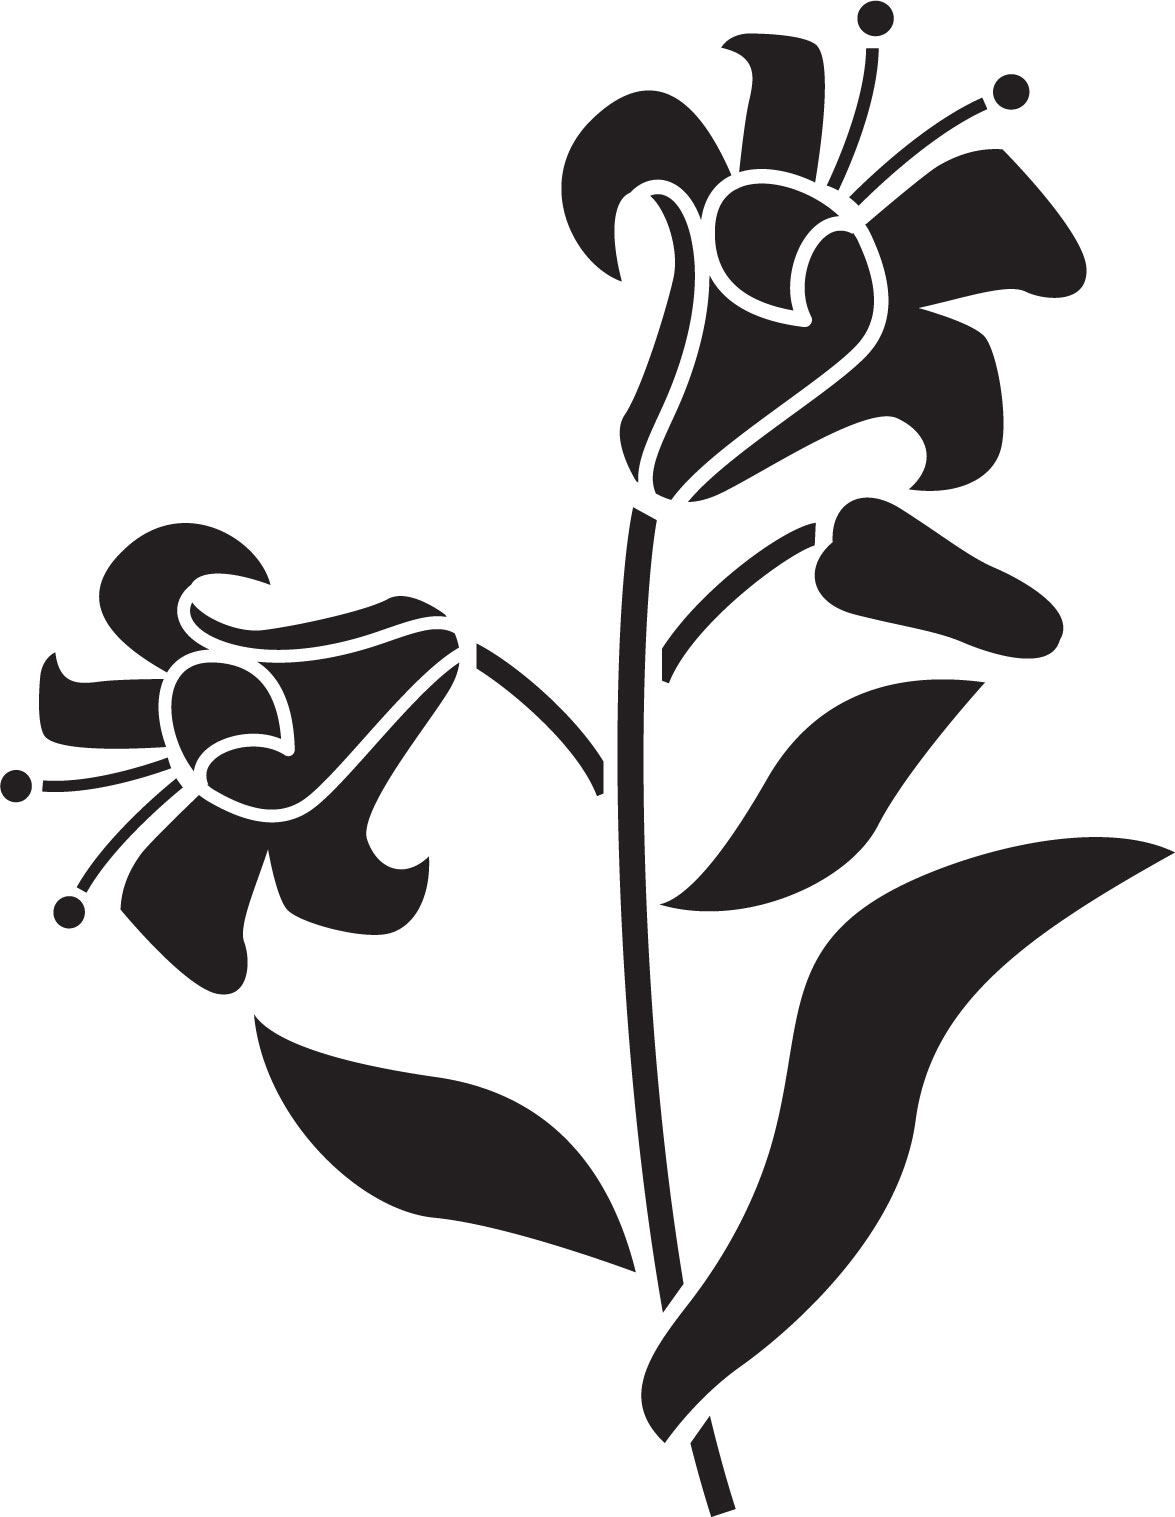 花のイラスト フリー素材 白黒 モノクロno 221 白黒 葉 ユリ